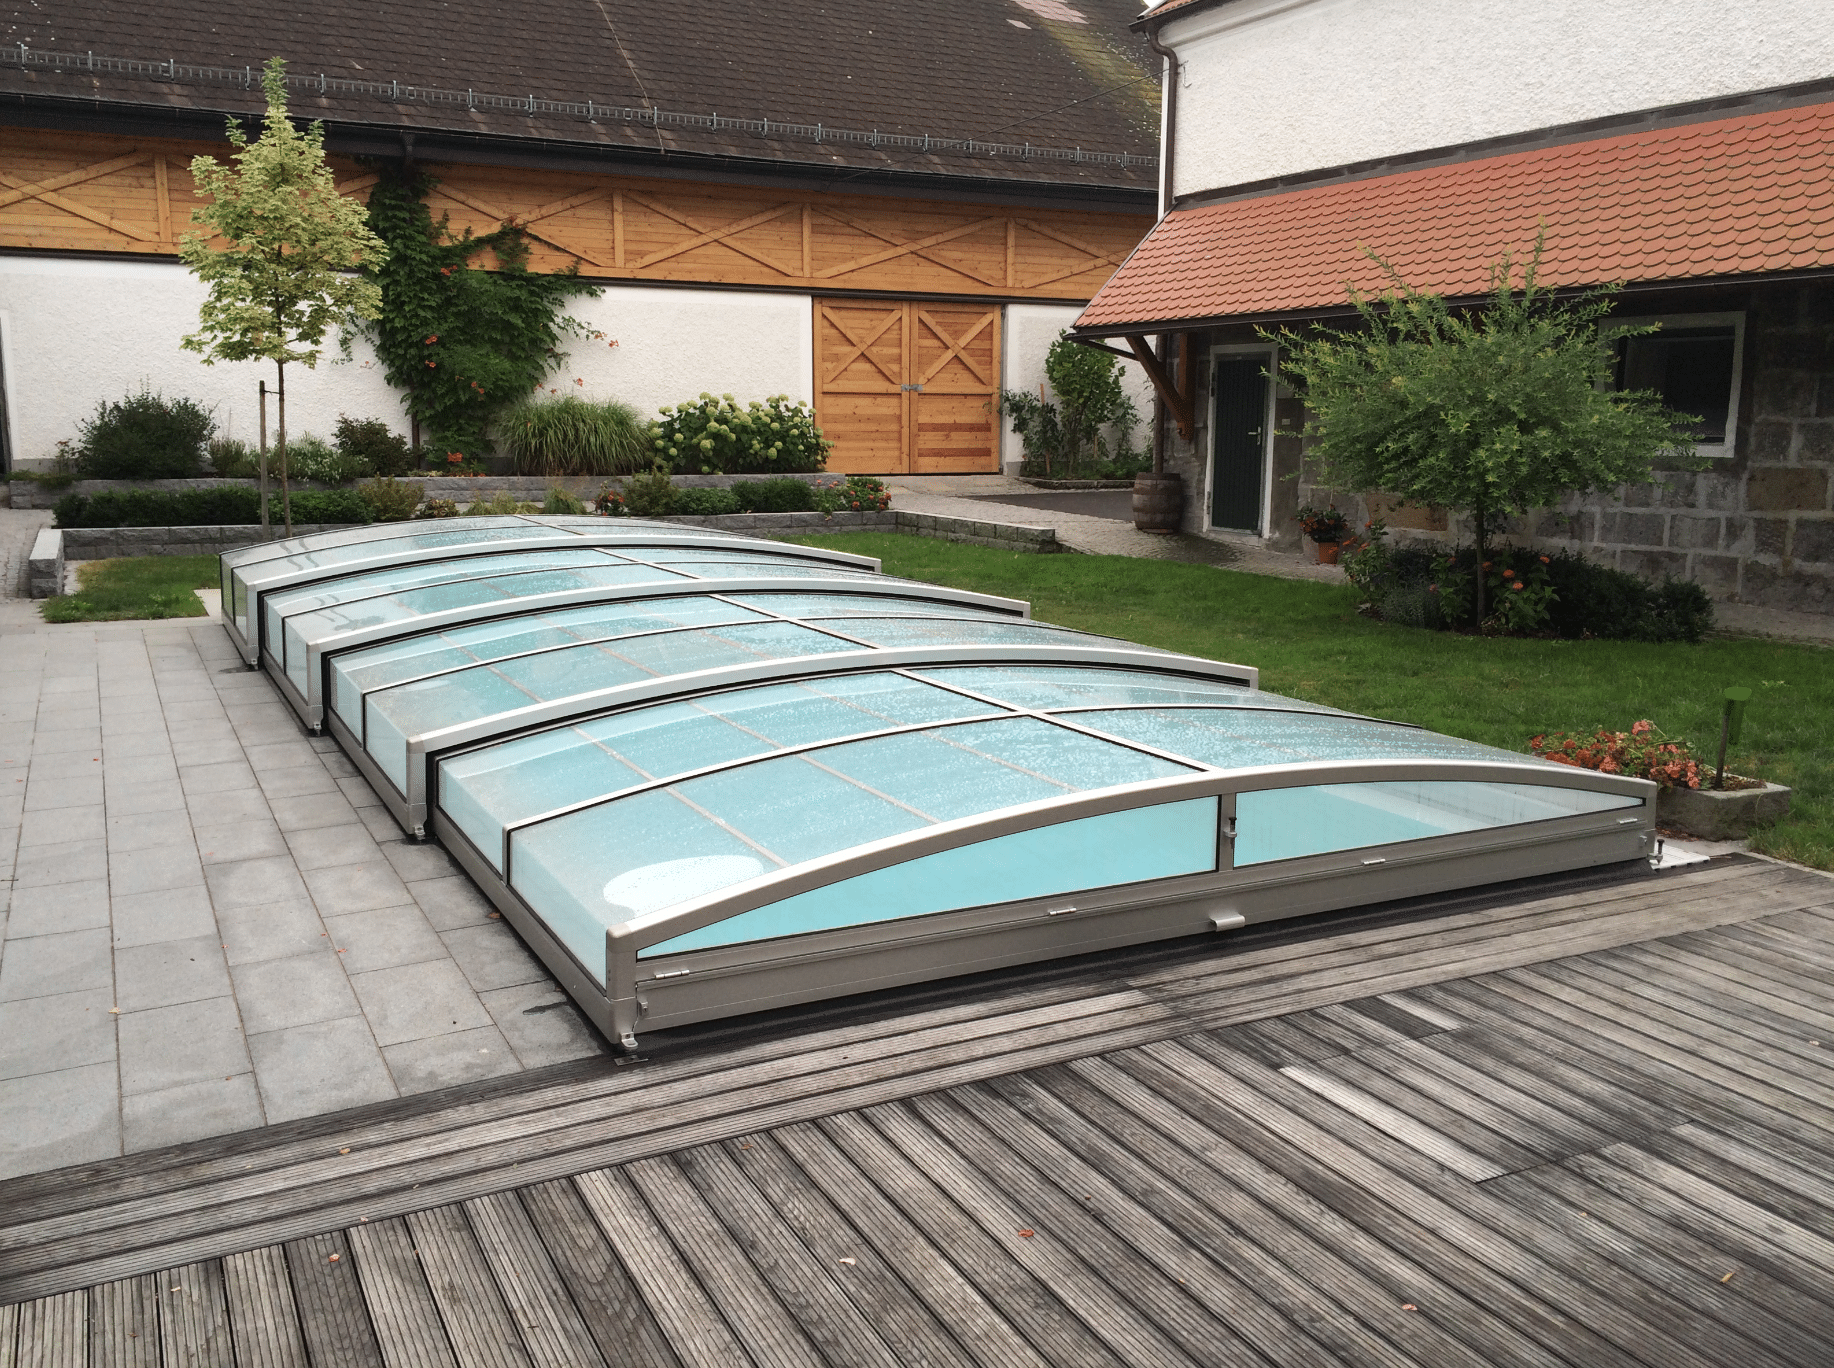 Friedrich Reitinger Schwimmbad und Wellness zeigt einen in den Boden eingelassenen, rechteckigen Pool mit einer Poolüberdachung aus Glas und einer Umrandung aus Holz und Steinplatten.